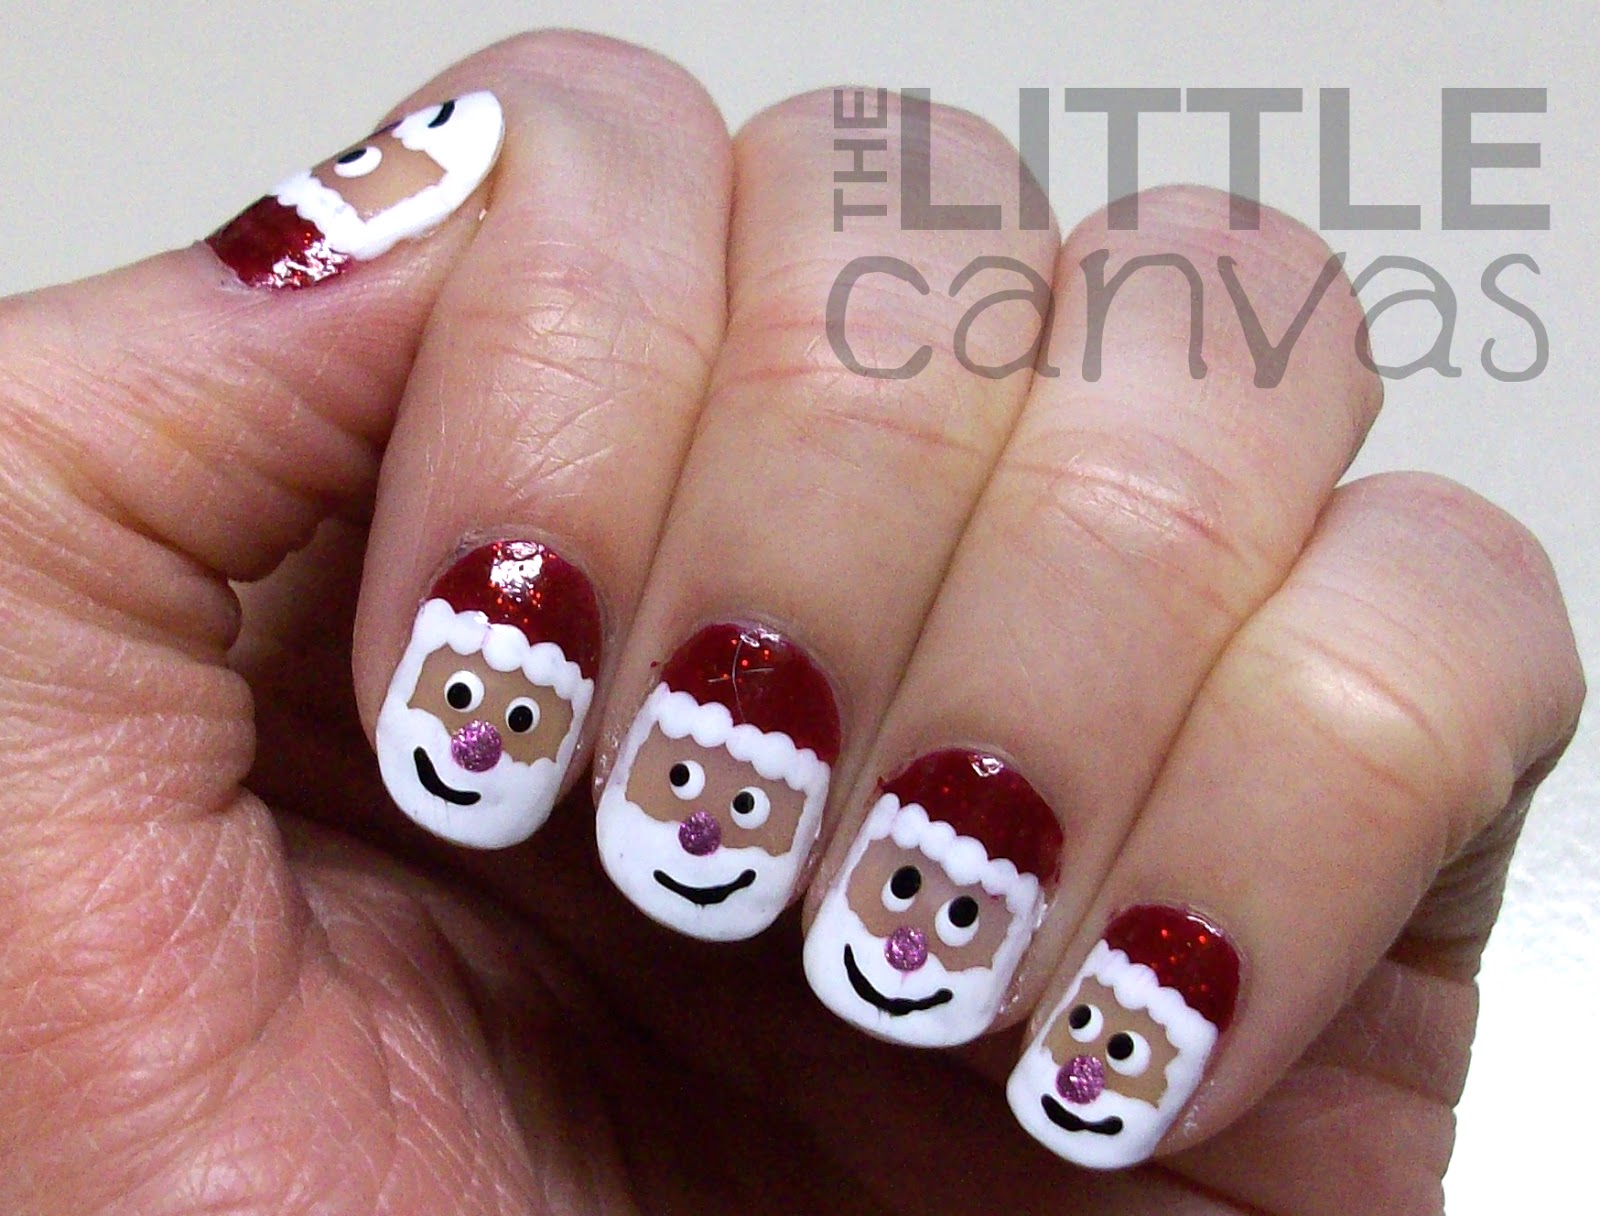 6. "Christmas Nail Art: Santa Claus Nails" - wide 4